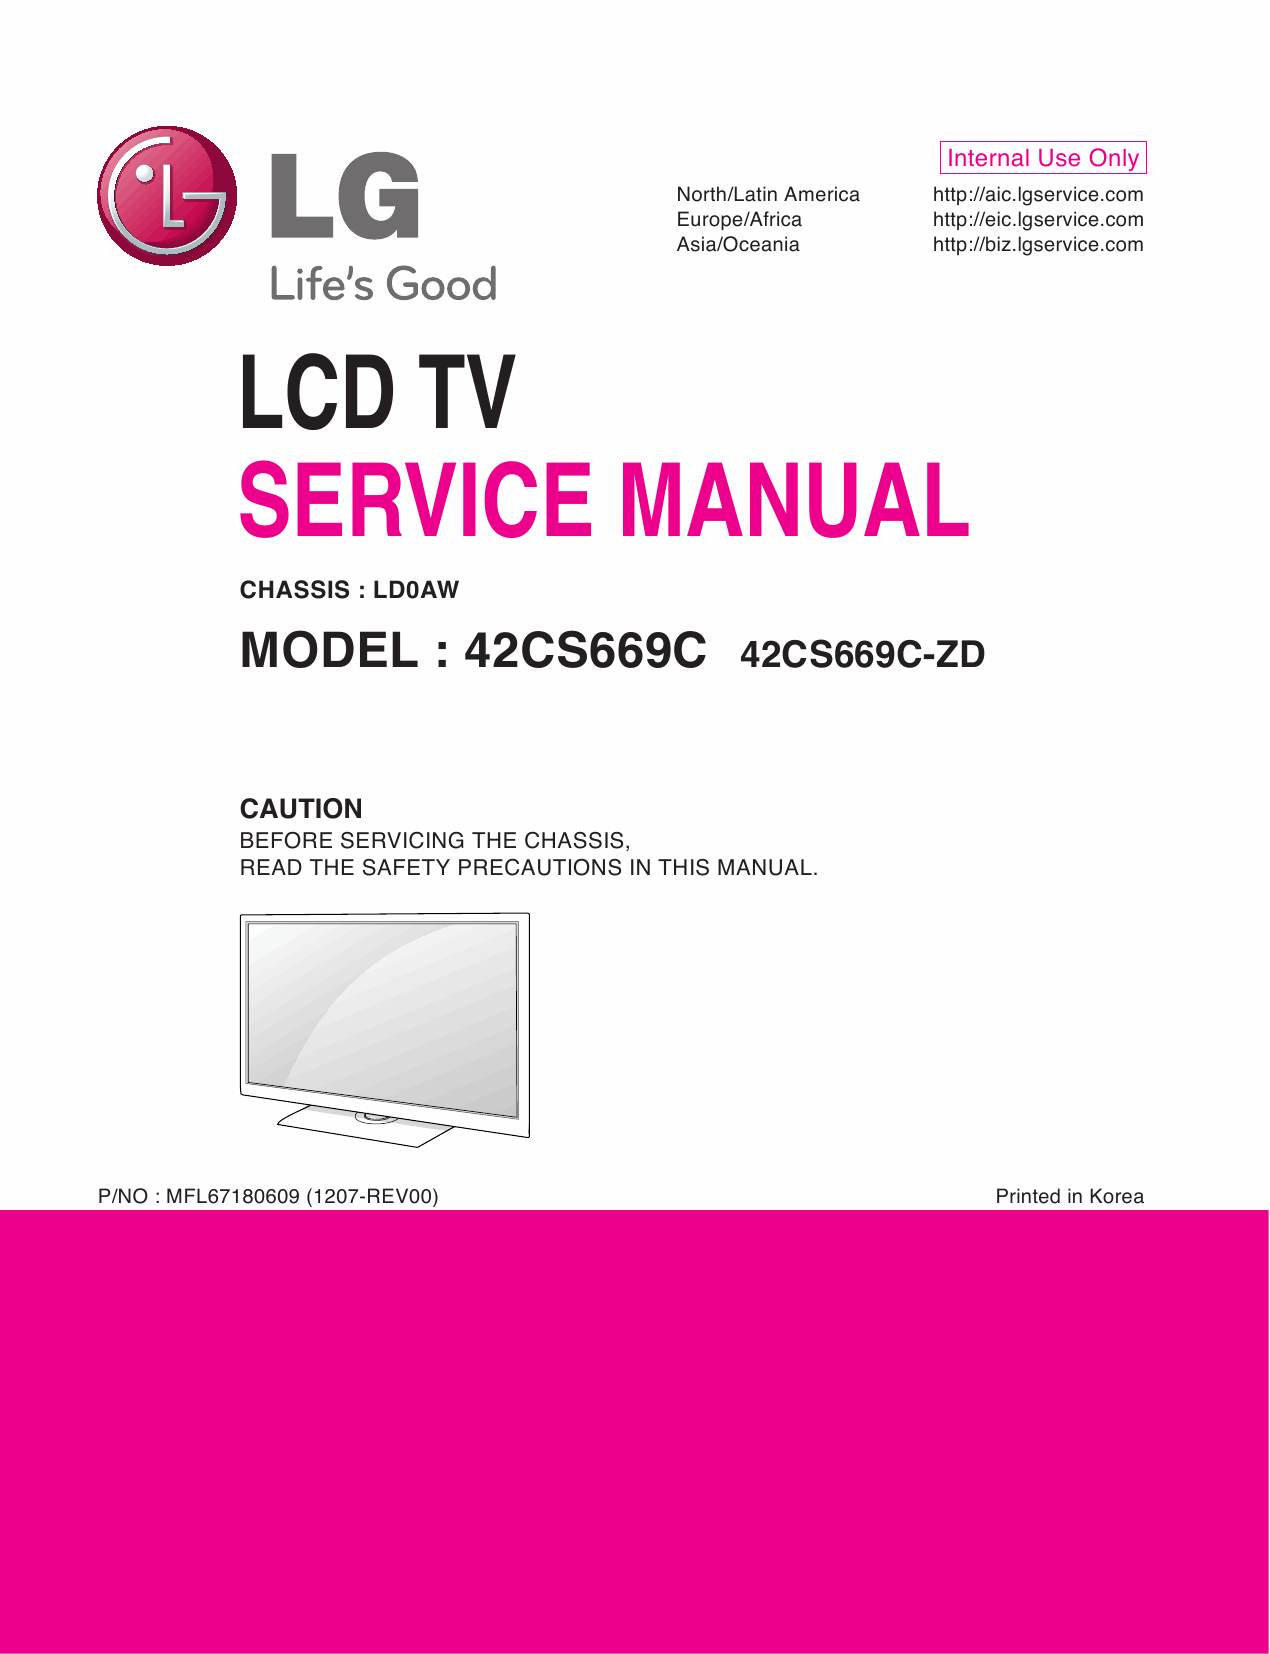 LG_LCD_TV_42CS669C_Service_Manual_2012_Qmanual.com-1